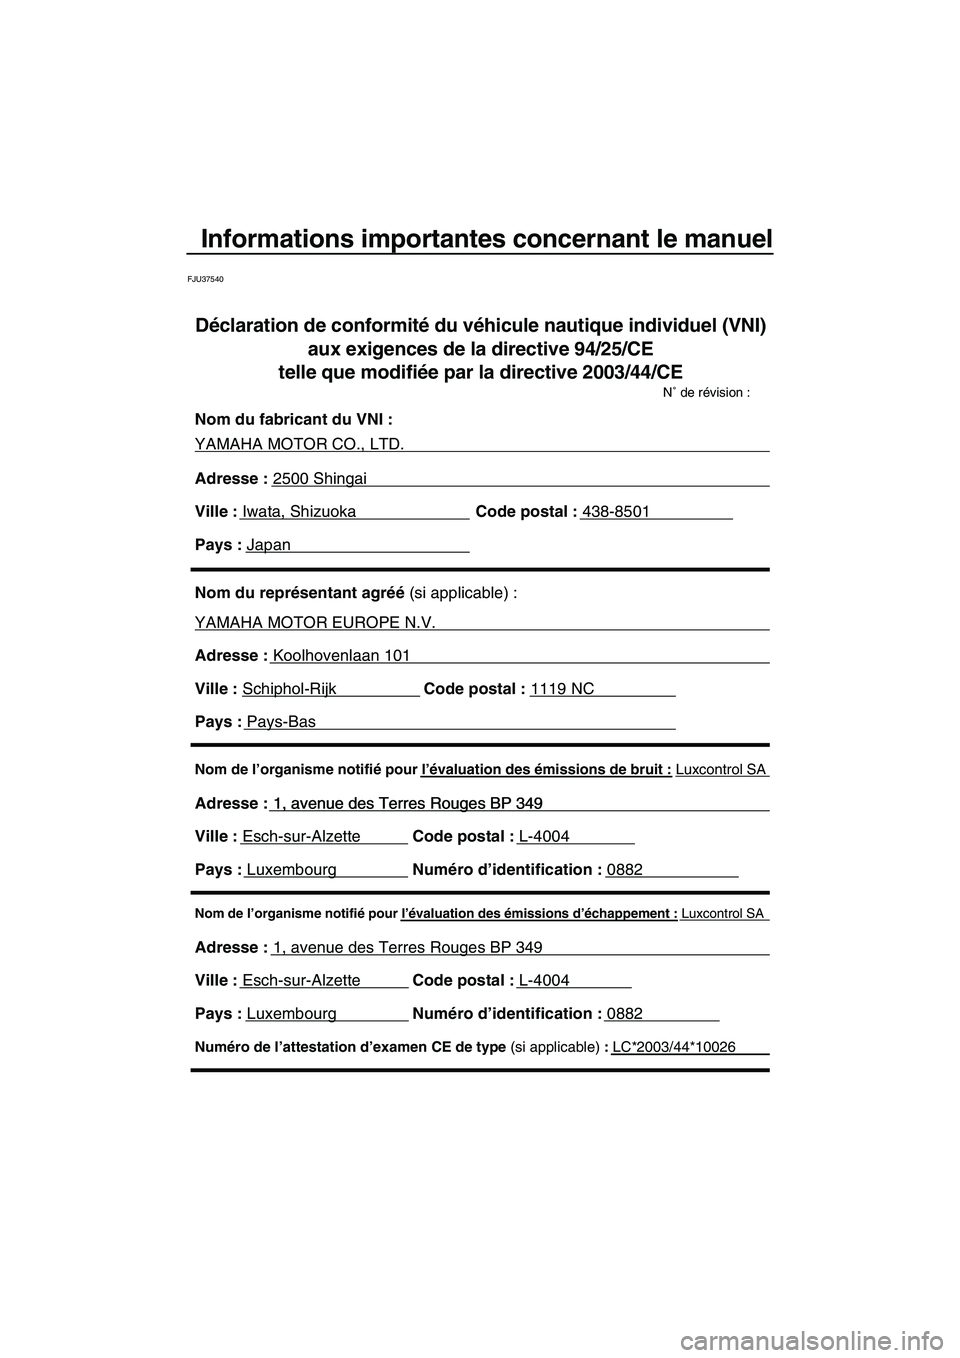 YAMAHA FZS SVHO 2009  Notices Demploi (in French) Informations importantes concernant le manuel
FJU37540
Nom de l’organisme notifié pour l’évaluation des émissions d’échappement : Luxcontrol SA
Adresse : 1, avenue des Terres Rouges BP 349 
